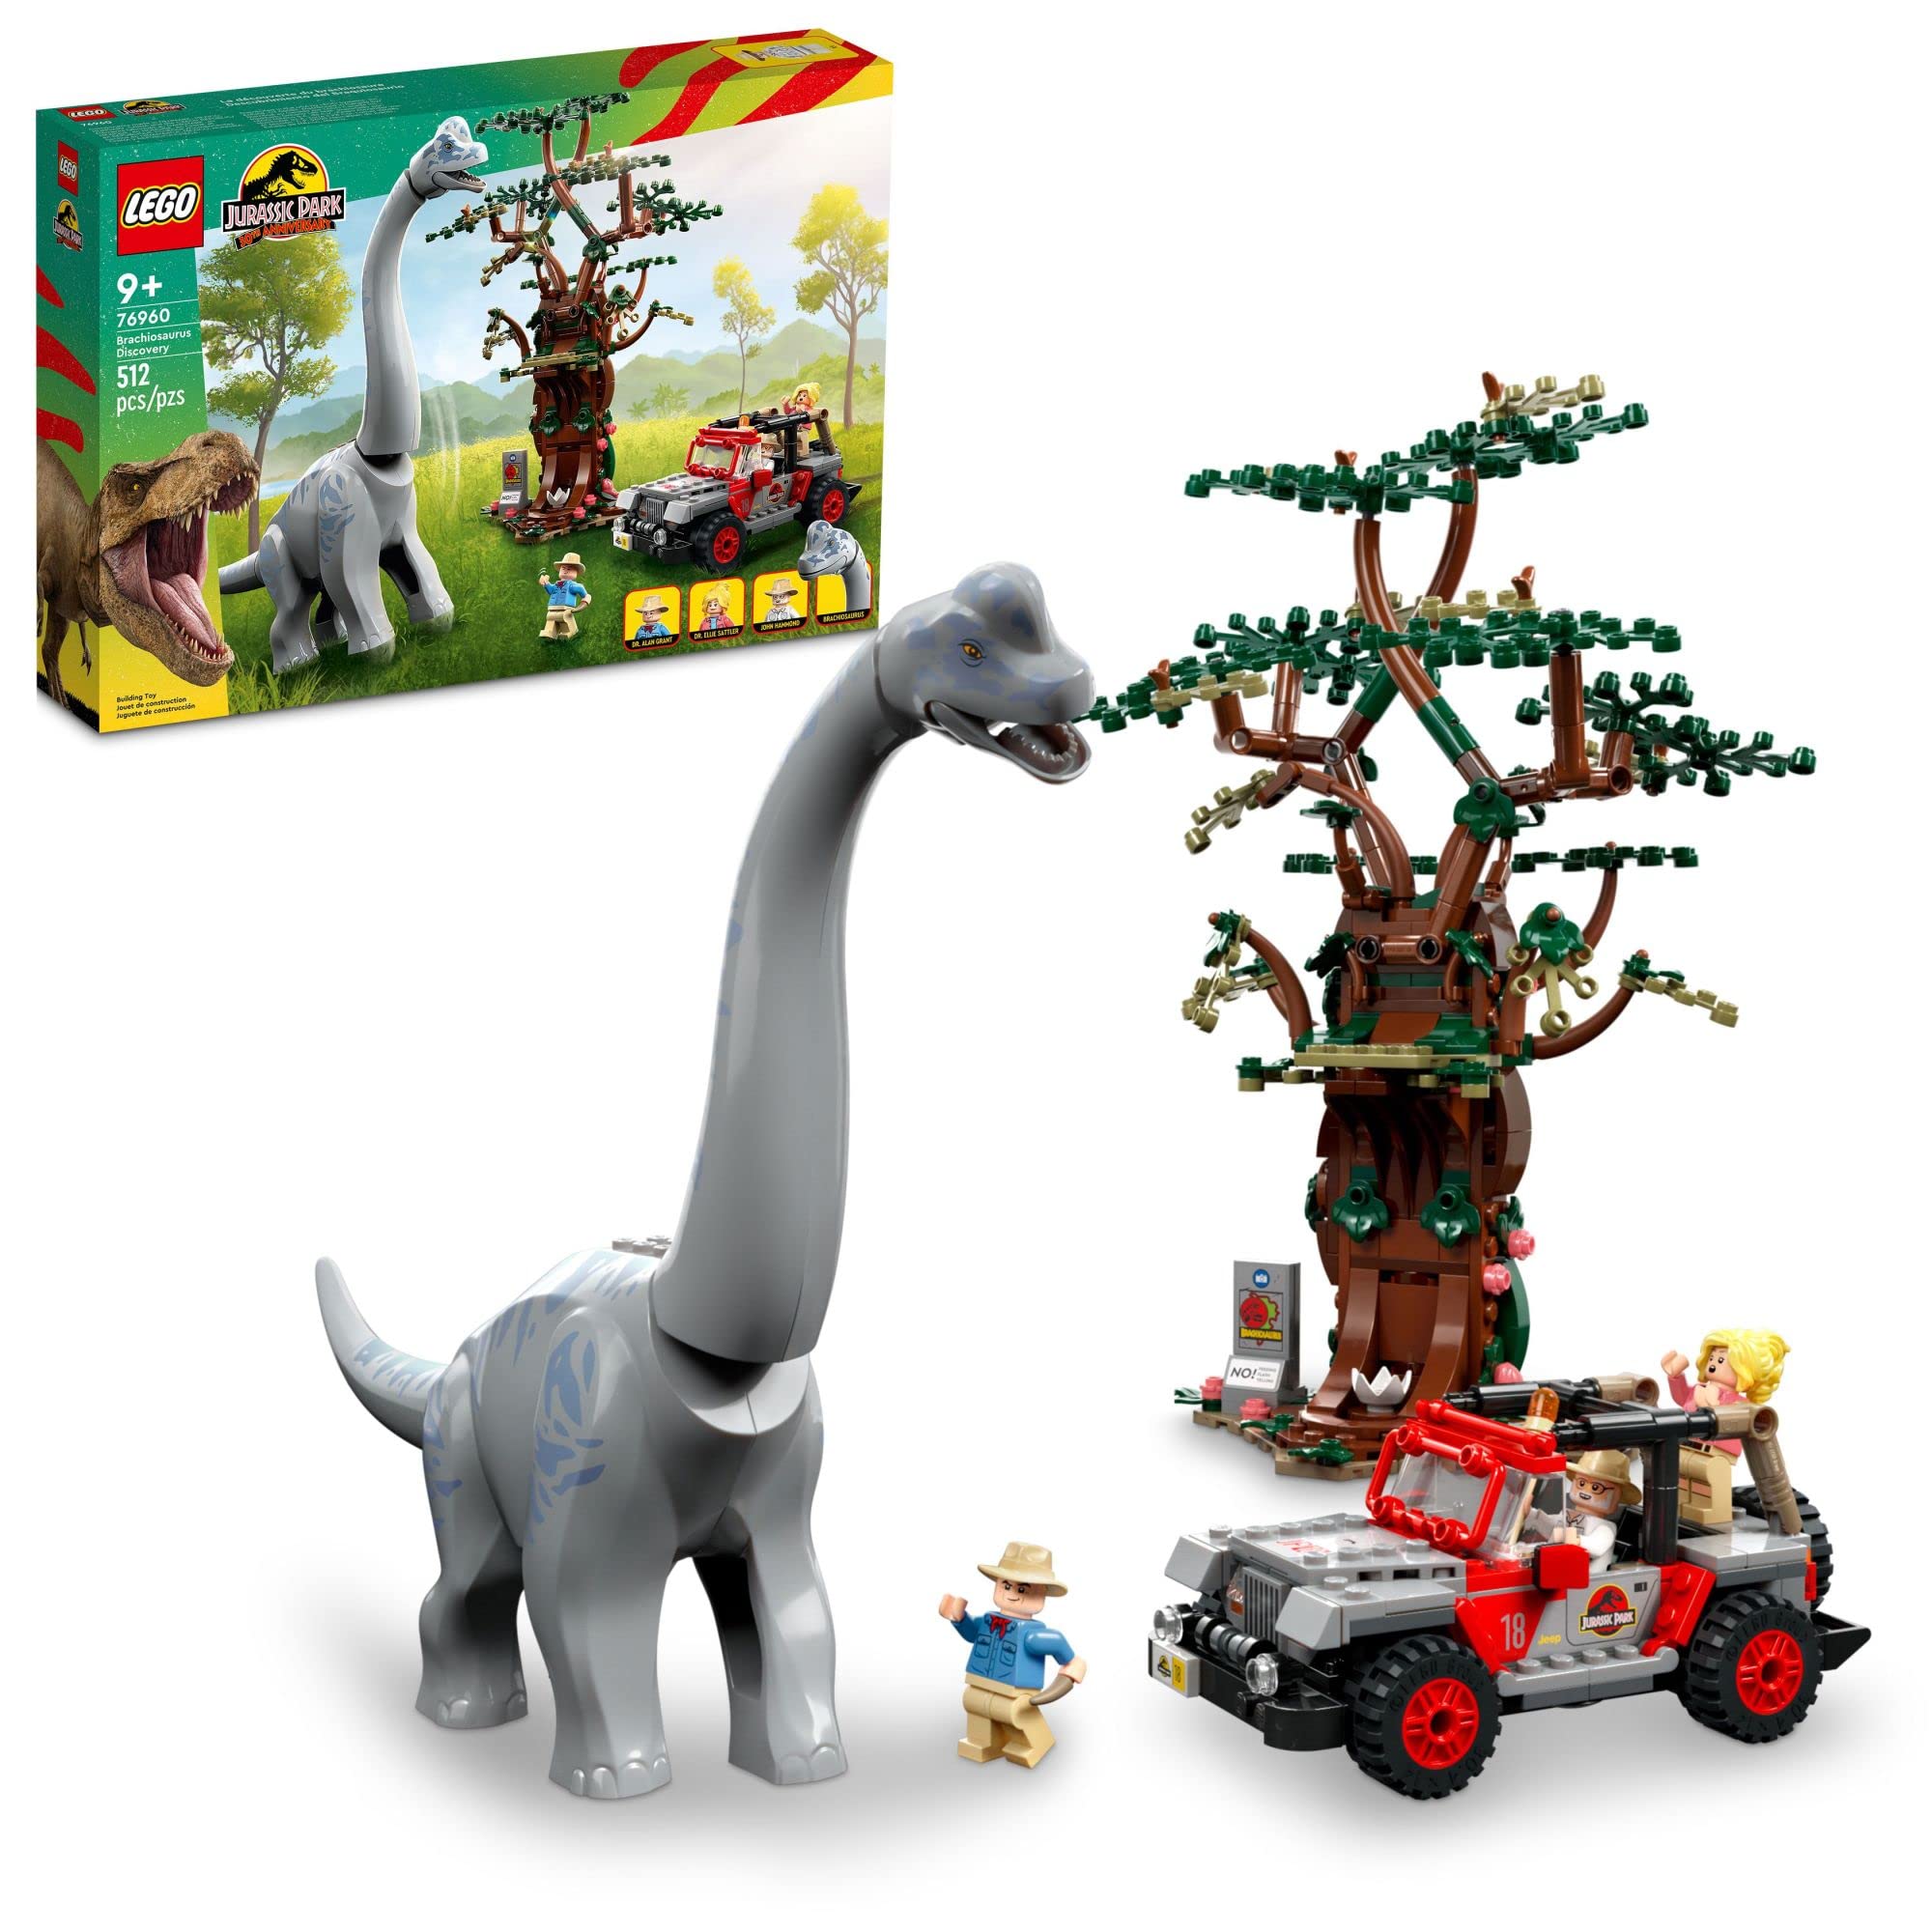  LEGO Jurassic World Brachiosaurus Discovery 76960 Jouet dinosaure du 30e anniversaire de Jurassic Park ; Comprend une grande figurine de dinosaure et un jouet de voiture Jeep Wrangler en brique ; Idée...